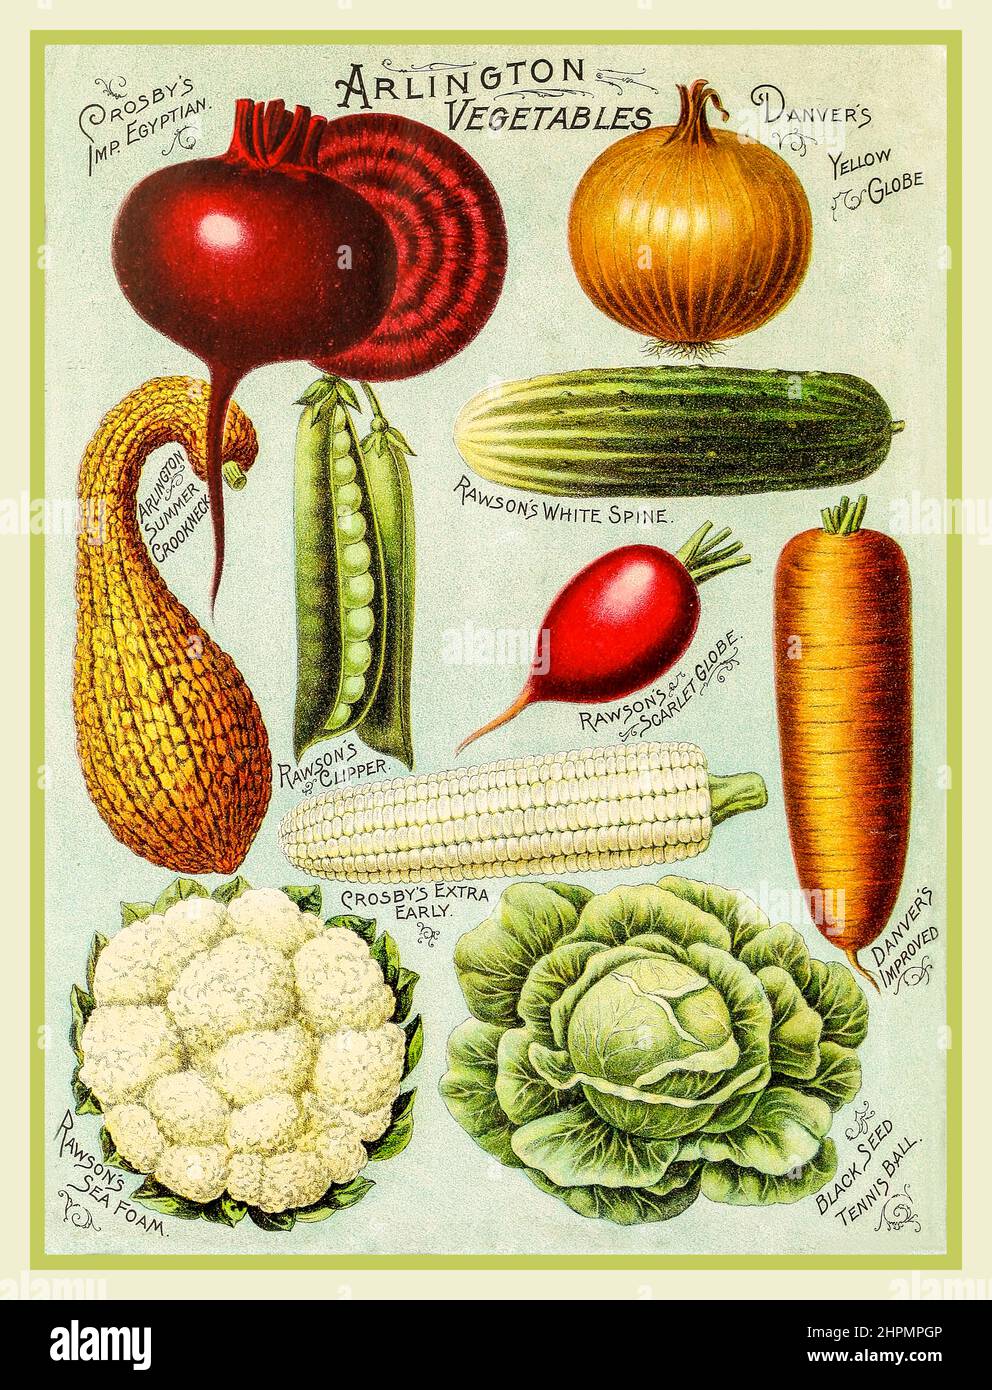 Livre illustré de LÉGUMES millésimés - graines de légumes et de fleurs de Rawson - W.W. Rawson and Co. (1895) couverture du catalogue de semences de légumes pour les légumes Arlington, y compris l'oignon Egytien Crobbys Imp, le globe jaune, le col de cygne d'été, le rachis blanc Rawsons, Banque D'Images